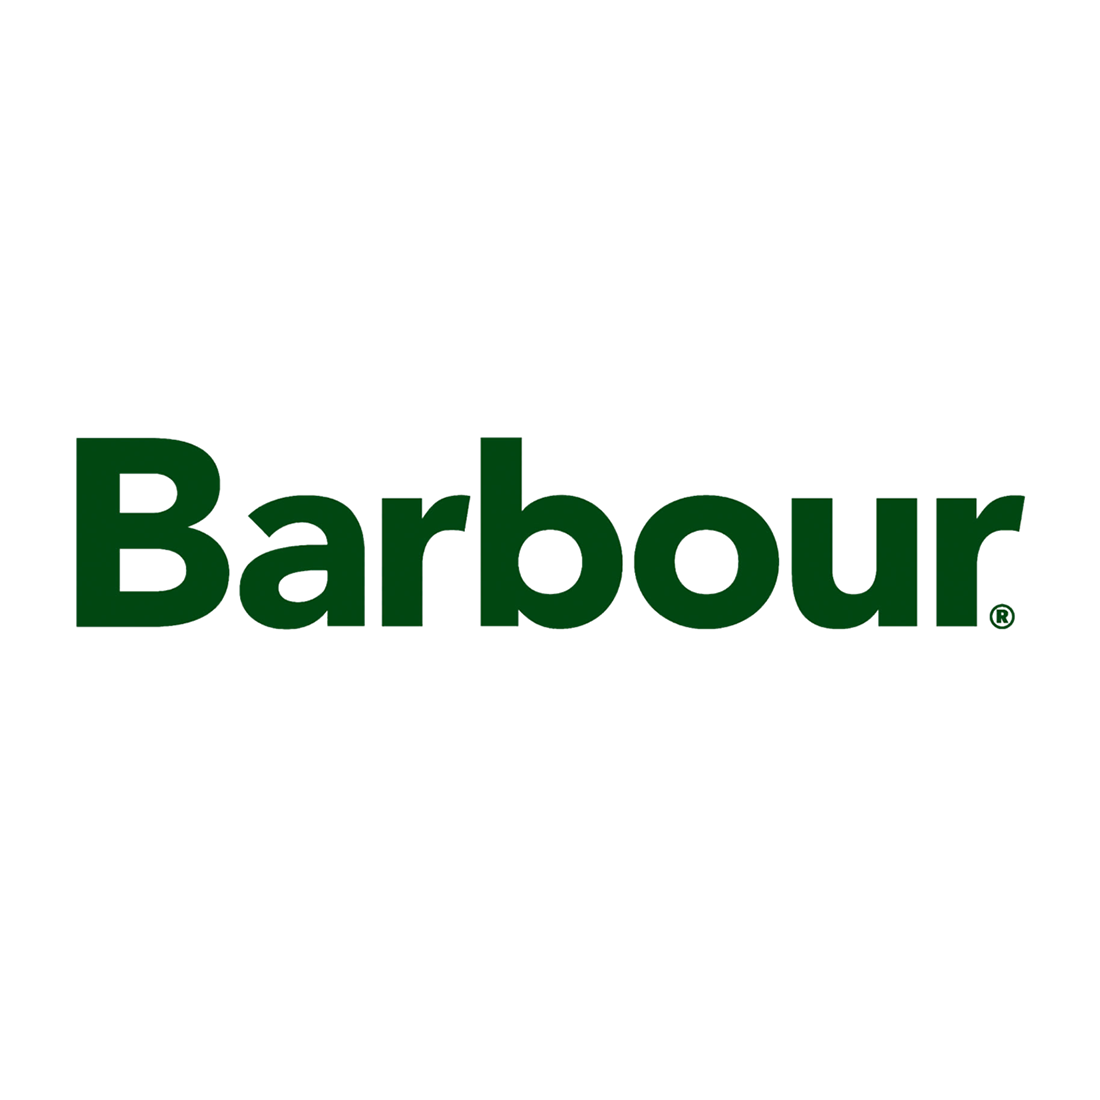 logo barbour